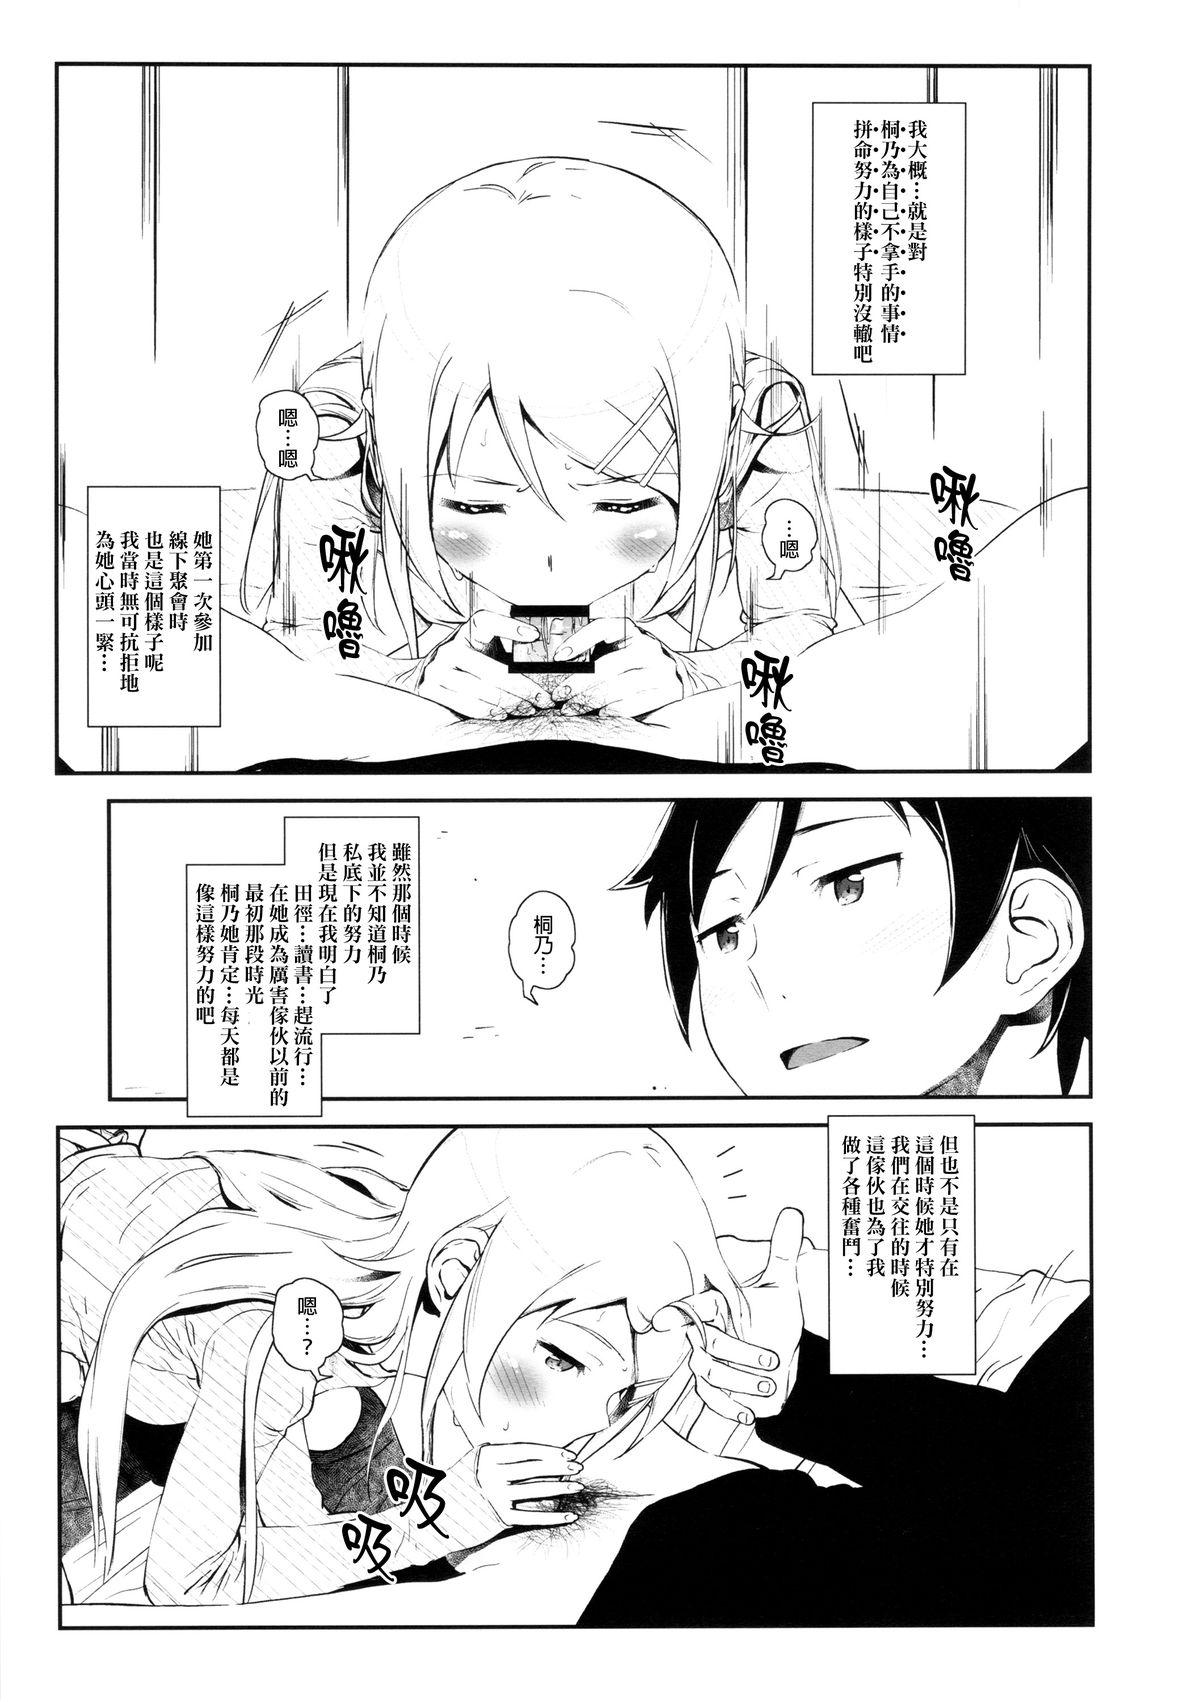 Sucking Cock Hoshikuzu Namida 3 - Ore no imouto ga konna ni kawaii wake ga nai Satin - Page 10